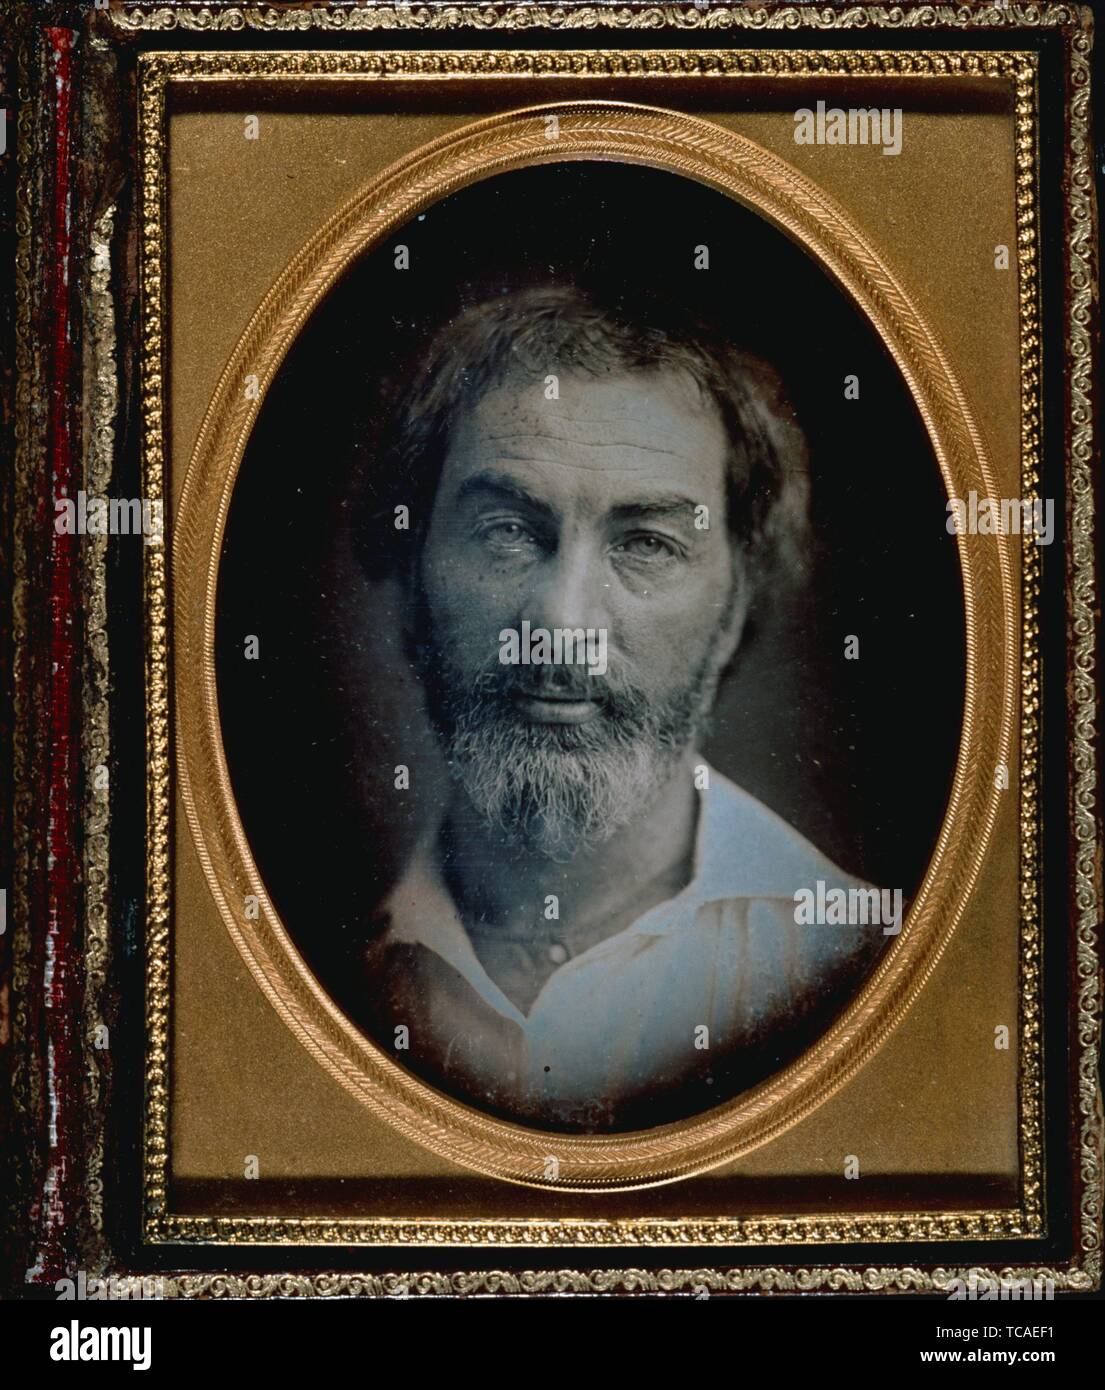 Daguerreotype ritratto di Walt Whitman. Lion, Oscar (collettore). Oscar Lion collezione di ritratti di Walt Whitman. Data di creazione: 1853 (circa). Foto Stock